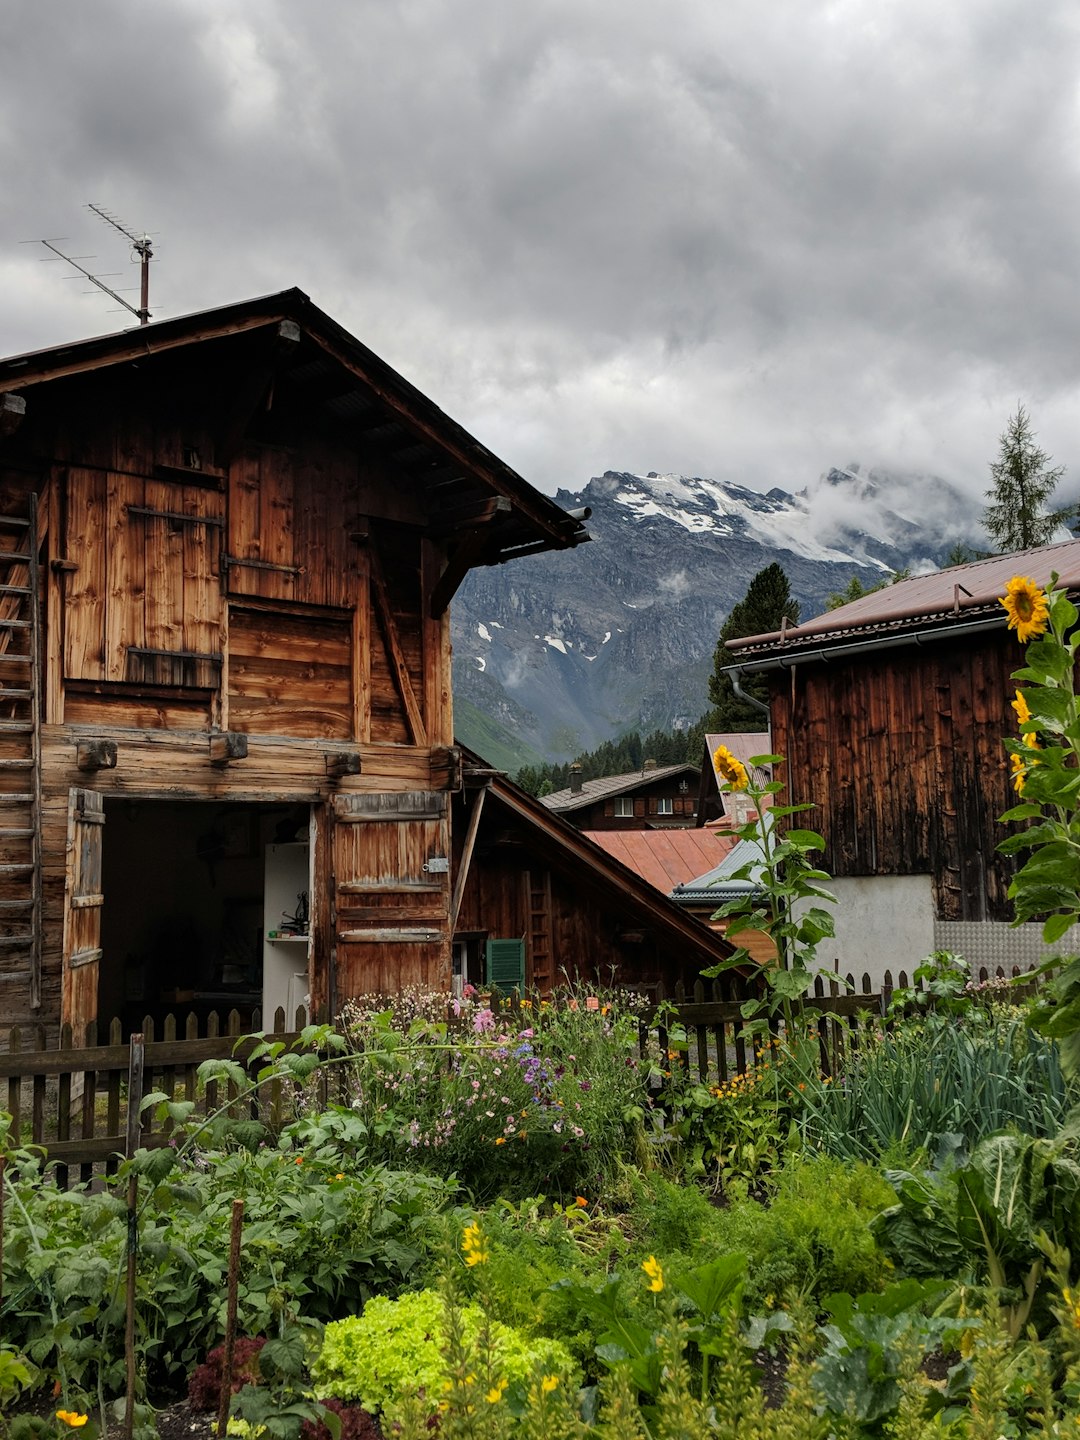 Log cabin photo spot Brunnen Zermatt